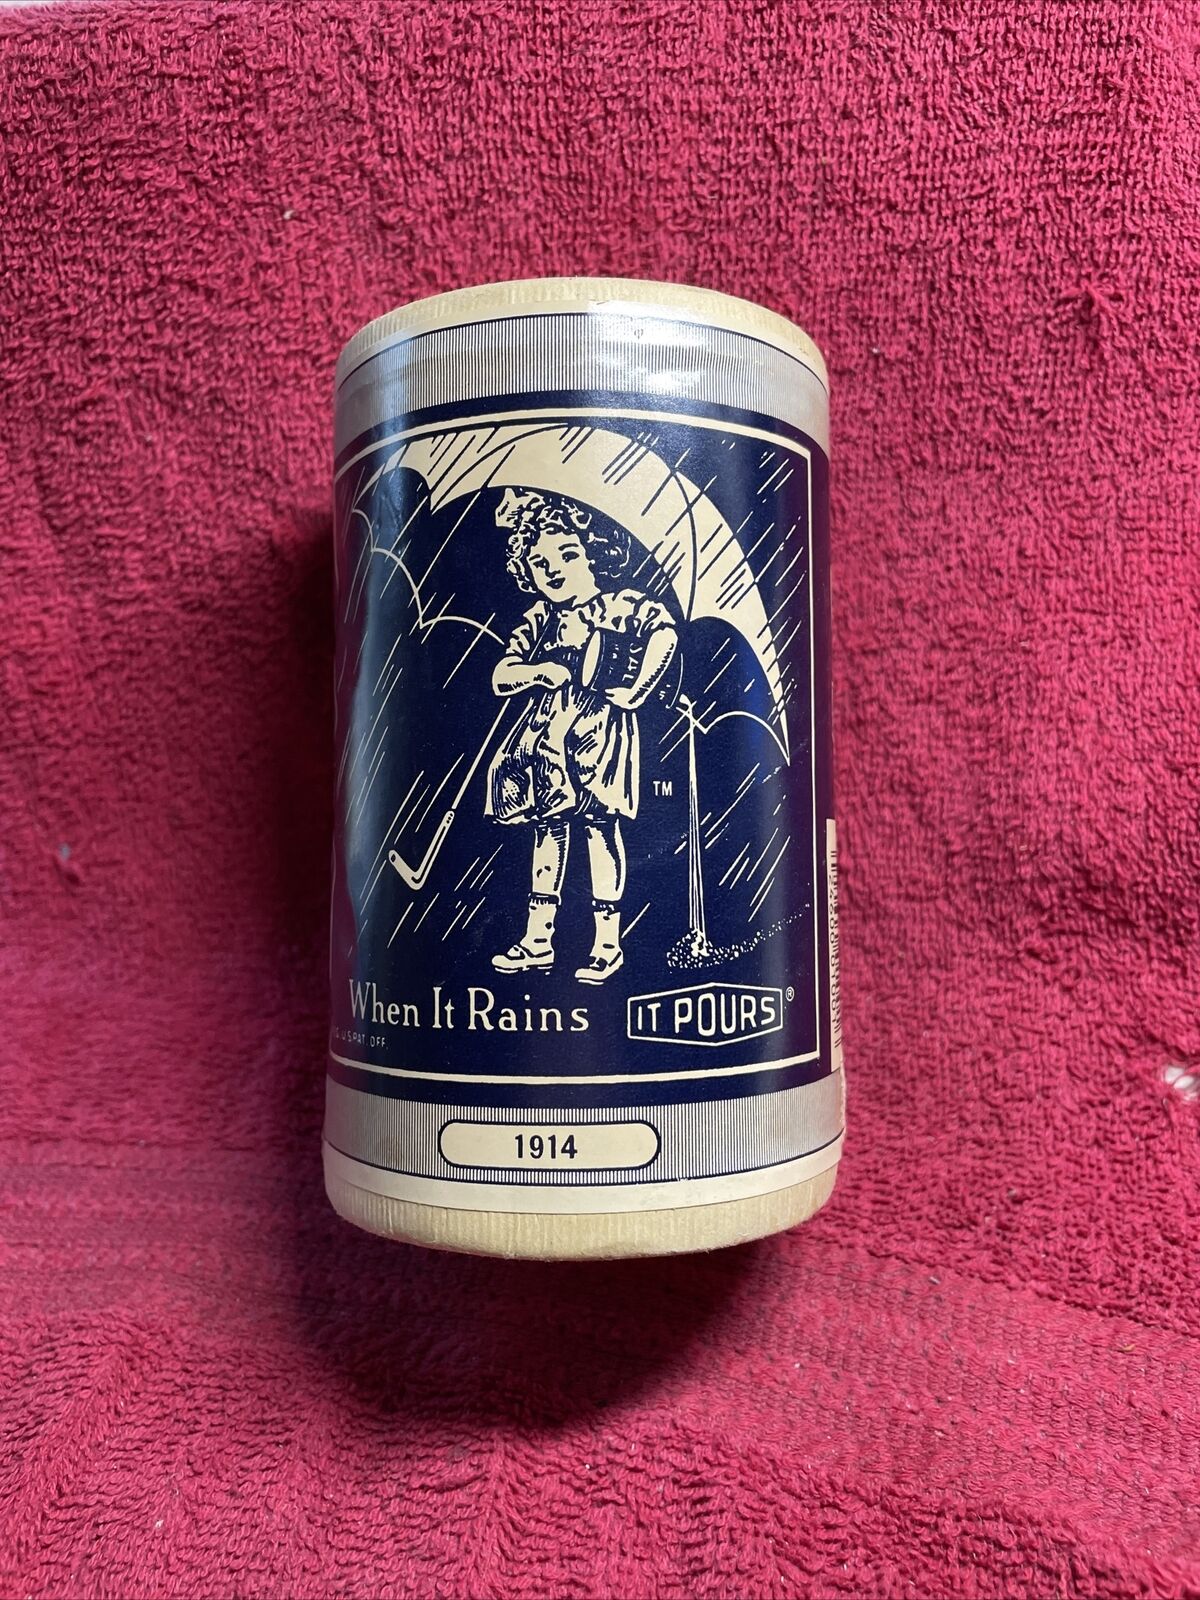 Vintage Commemorative Morton Salt Container “When it Rains it Pours” 1914